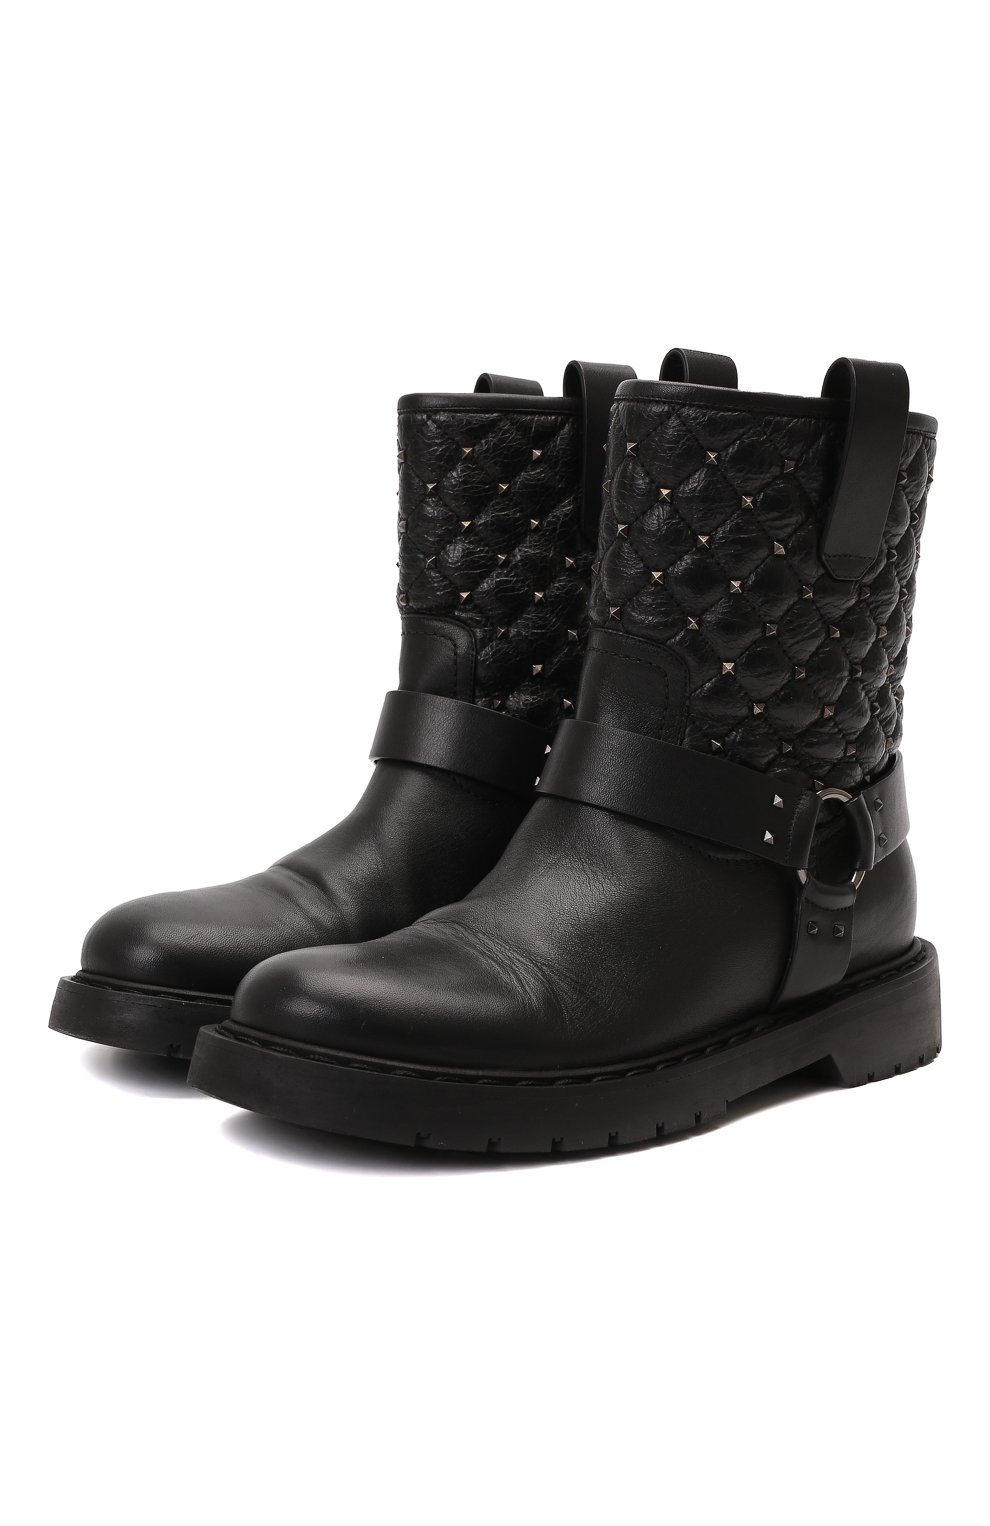 Кожаные ботинки Rockstud Spike | Valentino | Чёрный - 1